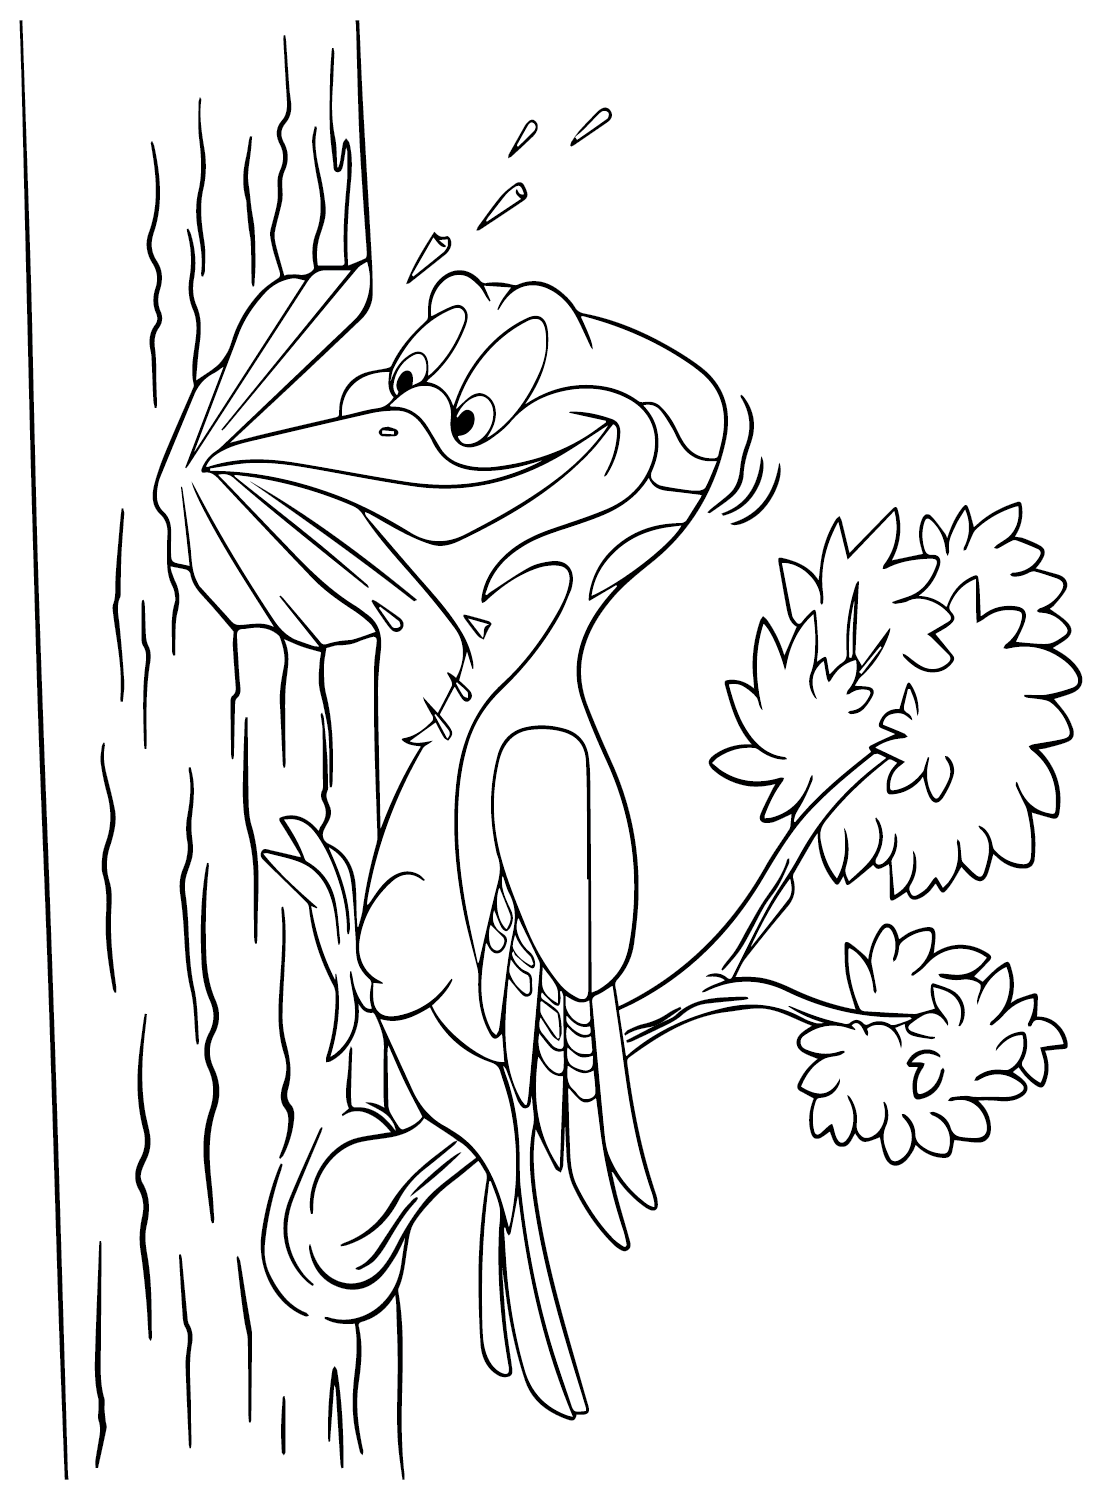 Página para colorir do Woody Woodpecker grátis no Woodpecker